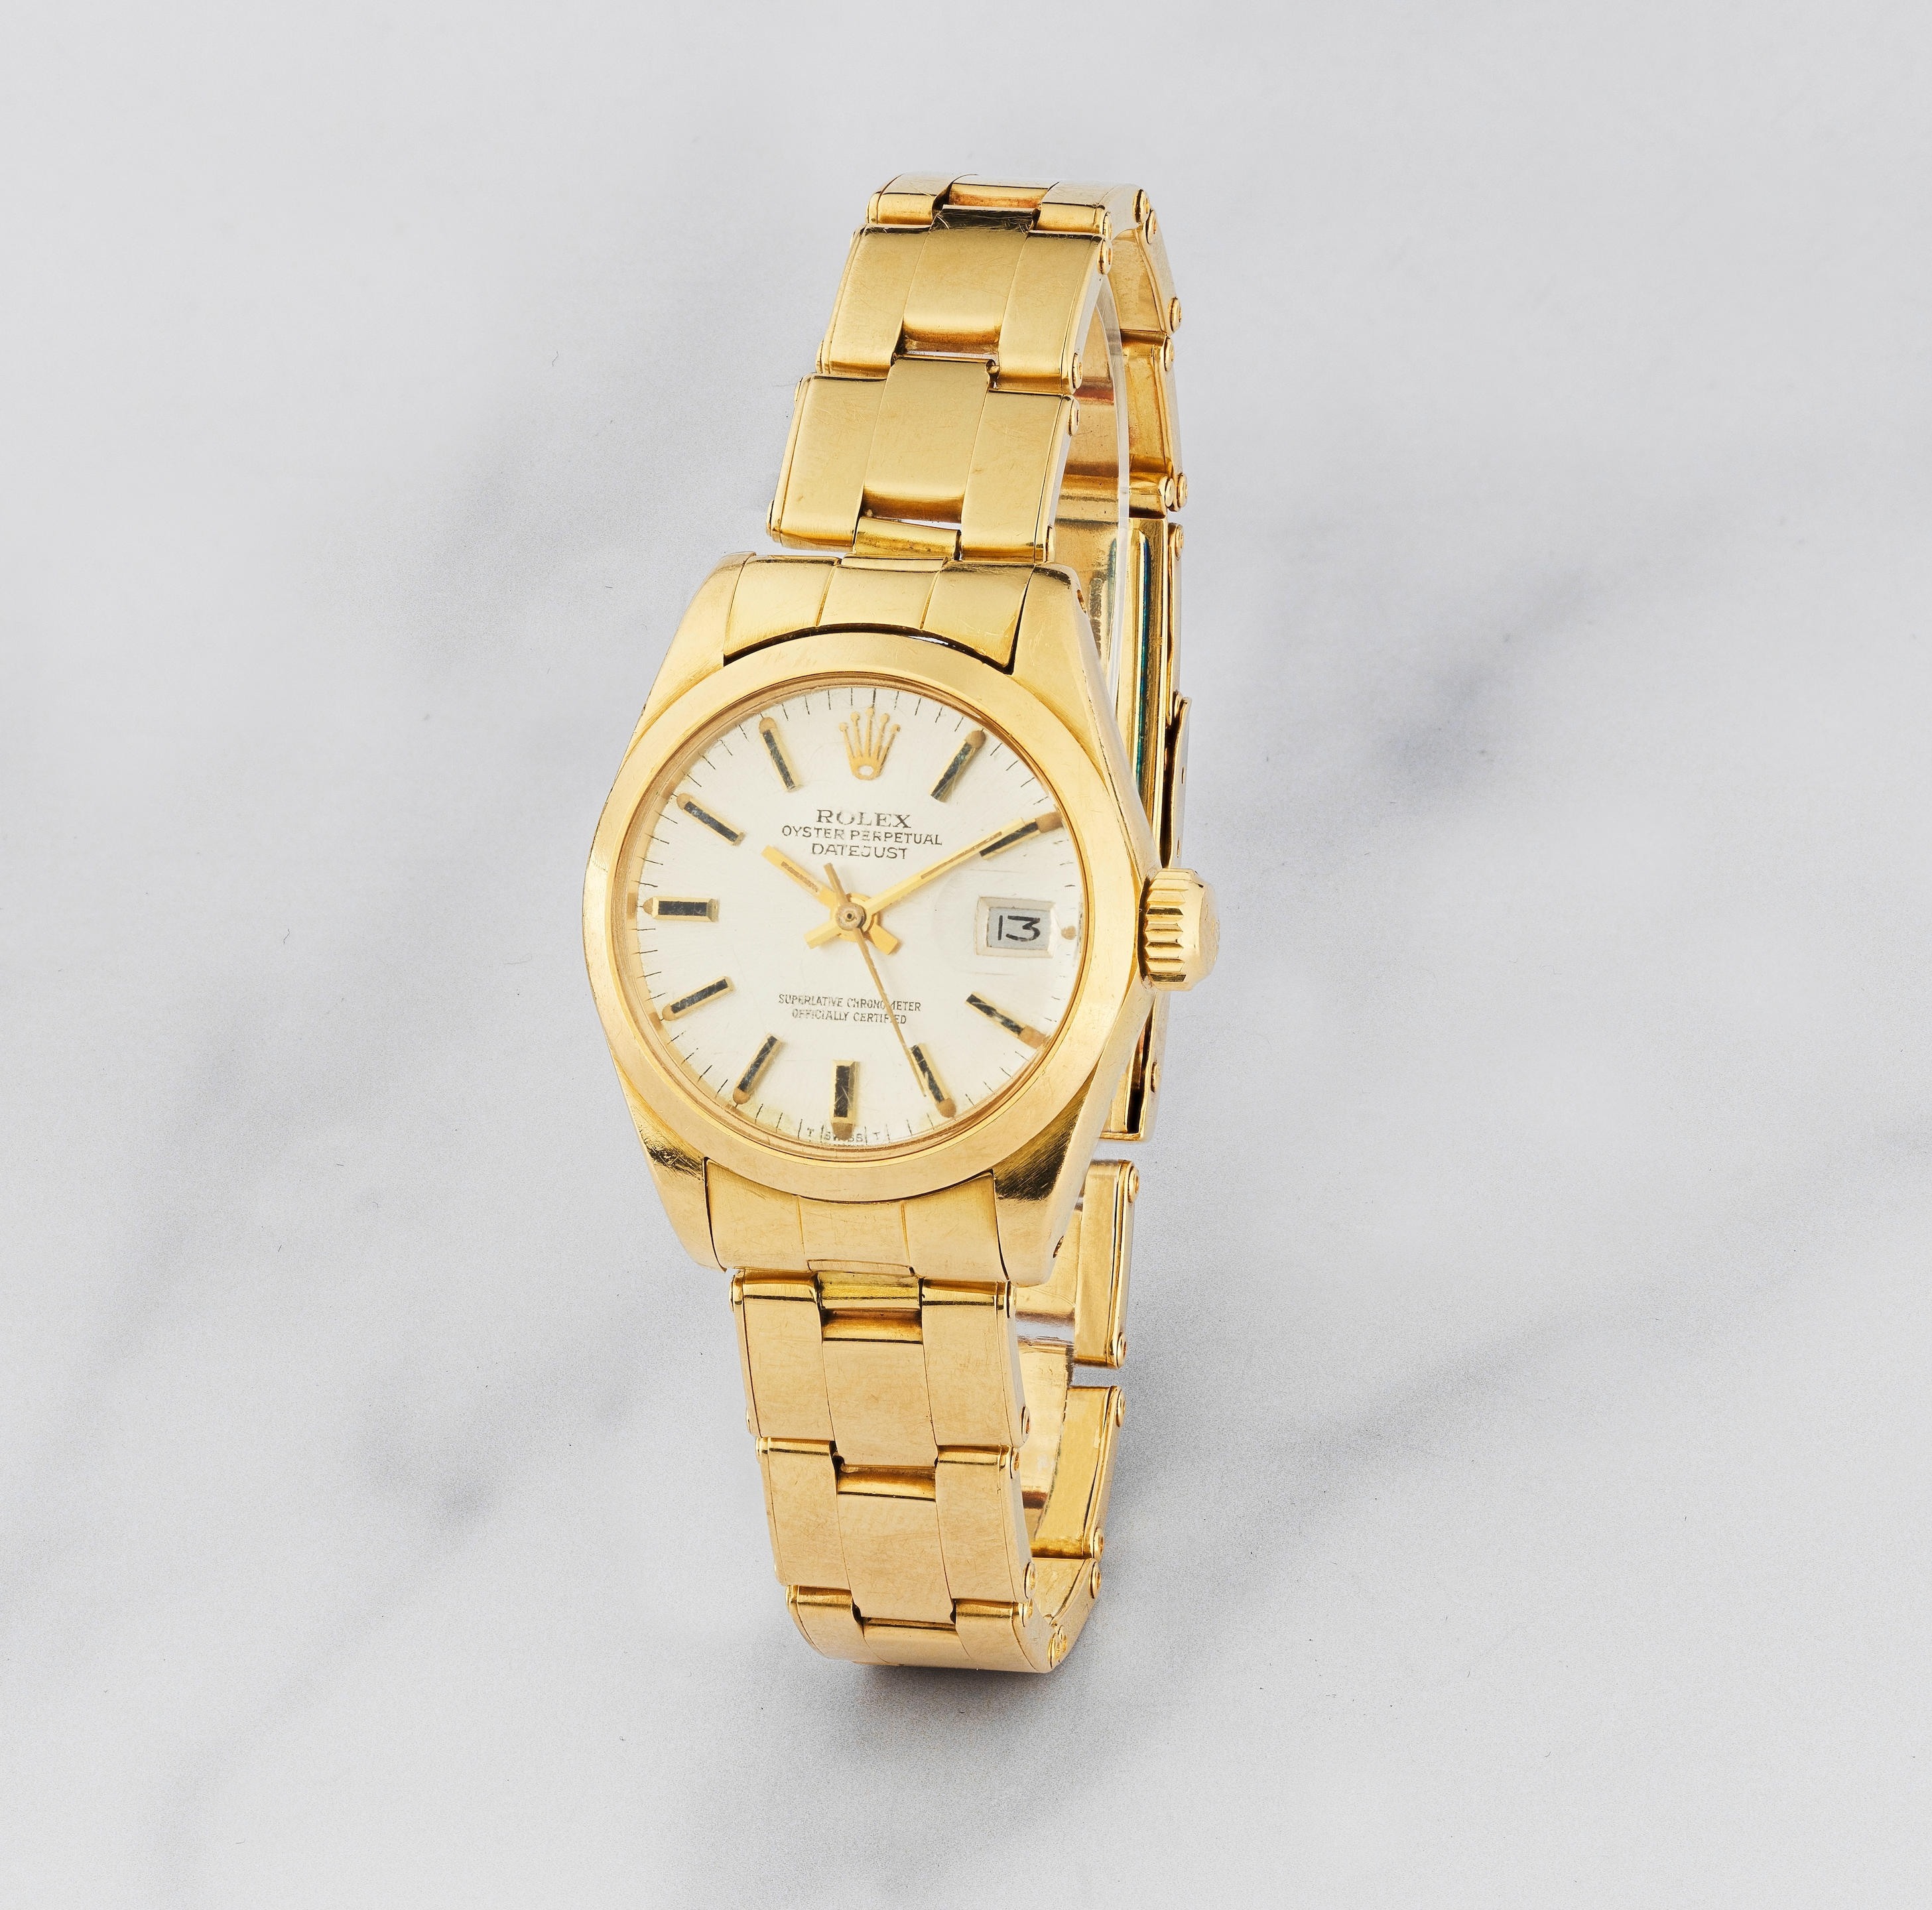 Rolex. Montre bracelet de dame en or jaune 18K (750) avec date mouvement automatique Rolex. A lad...